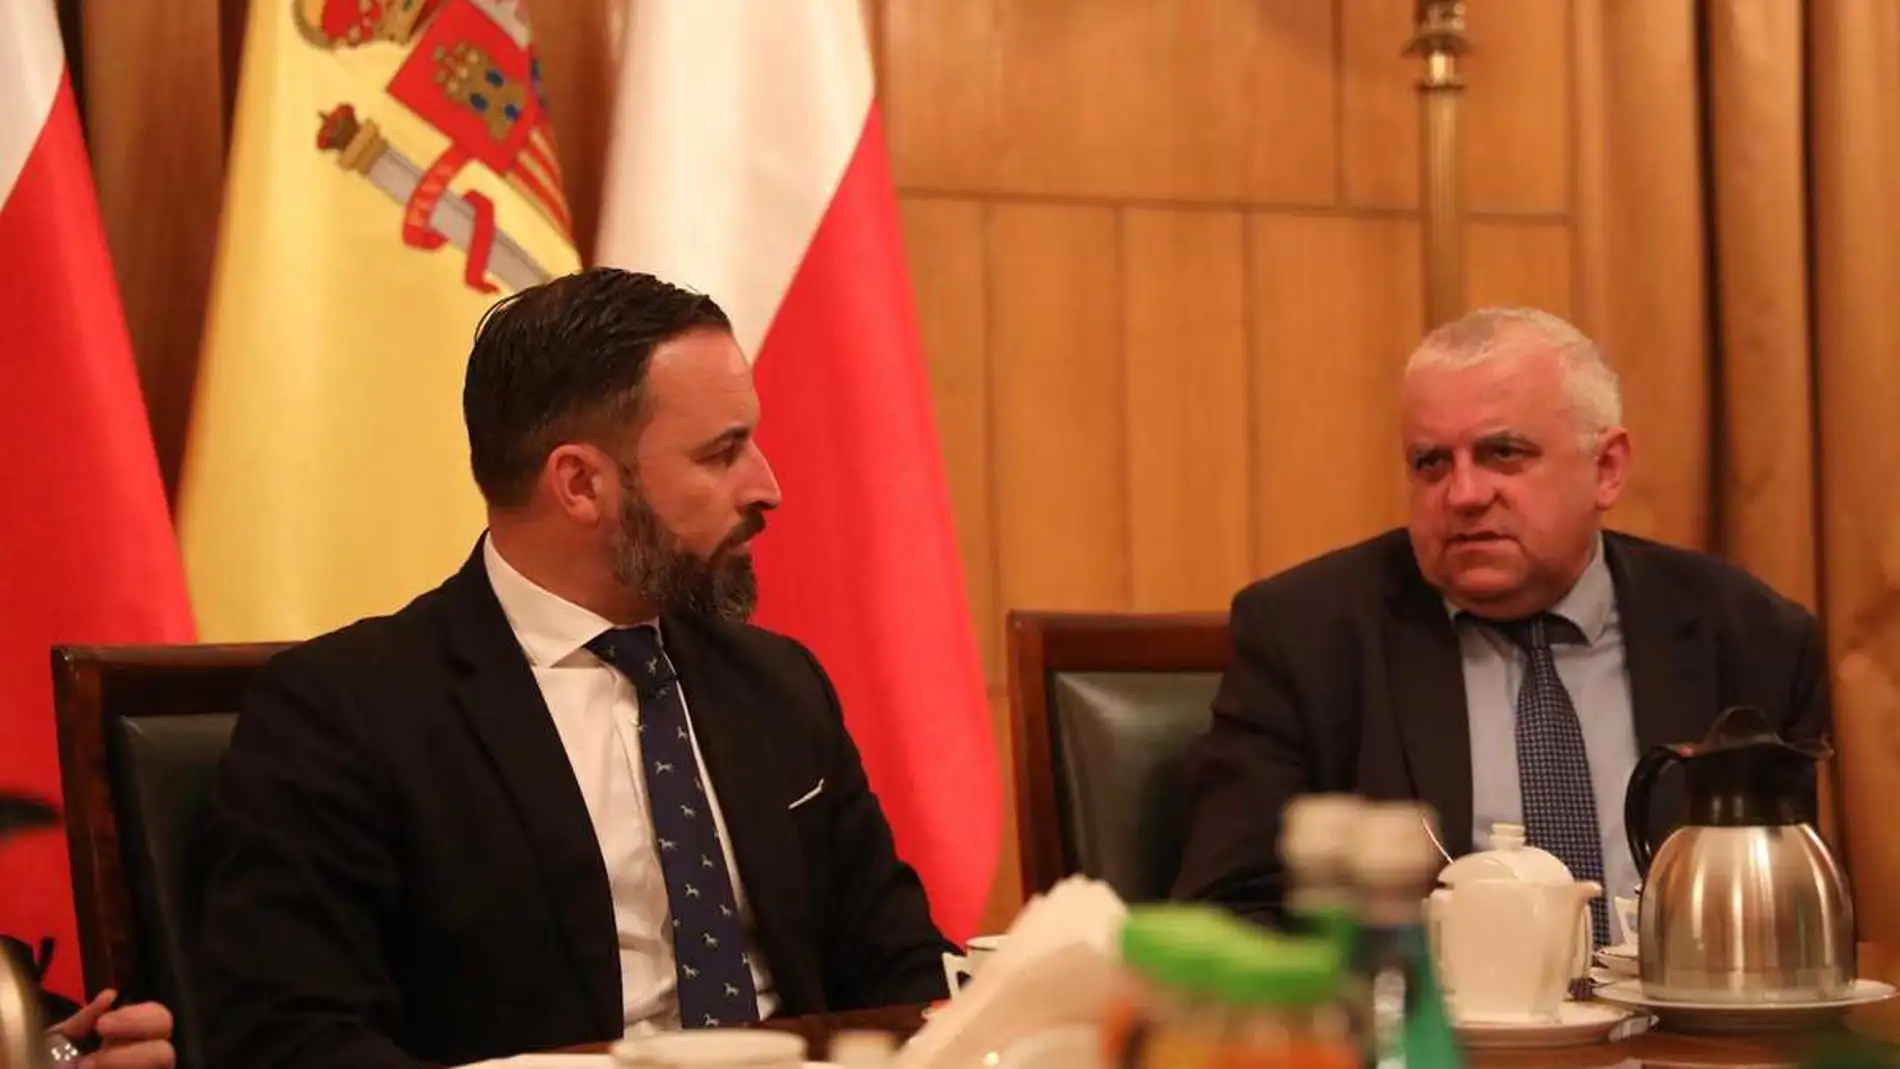 El líder de Vox, Santiago Abascal con el presidente del partido polaco Ley y Justicia, Kaczynski